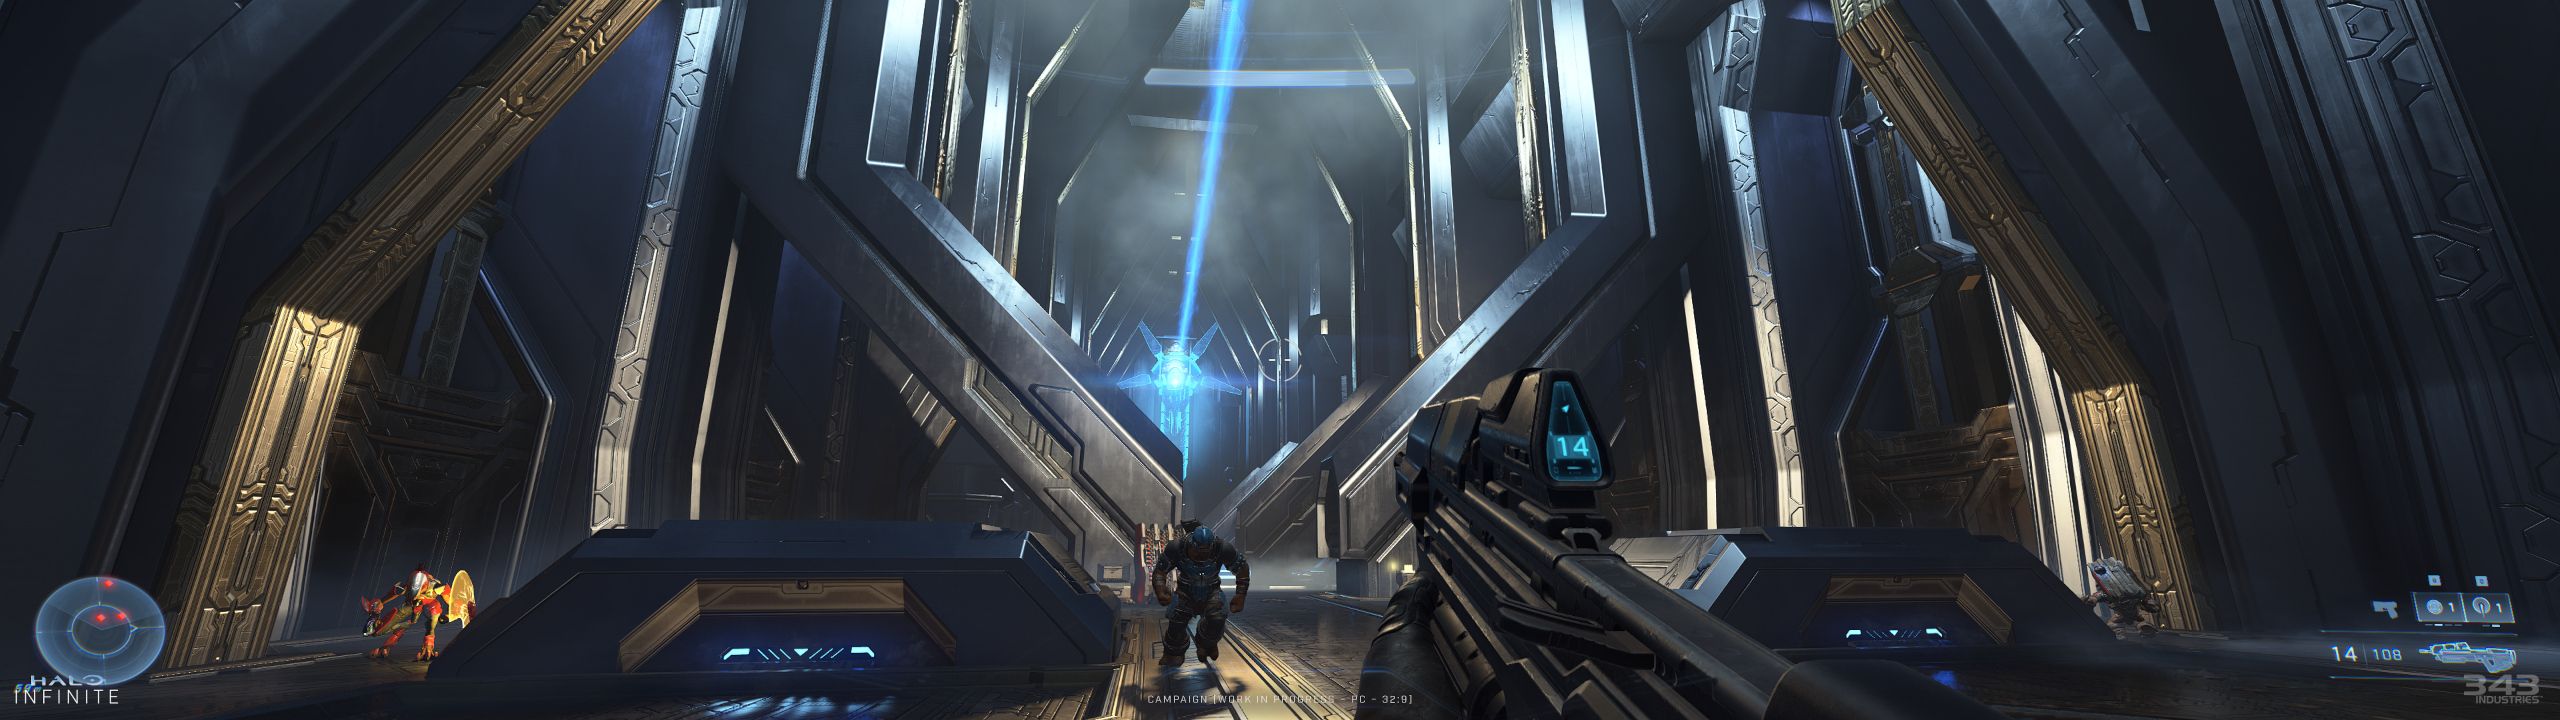 Halo Infinite Campaign Screenshot Super Ultrawide PC